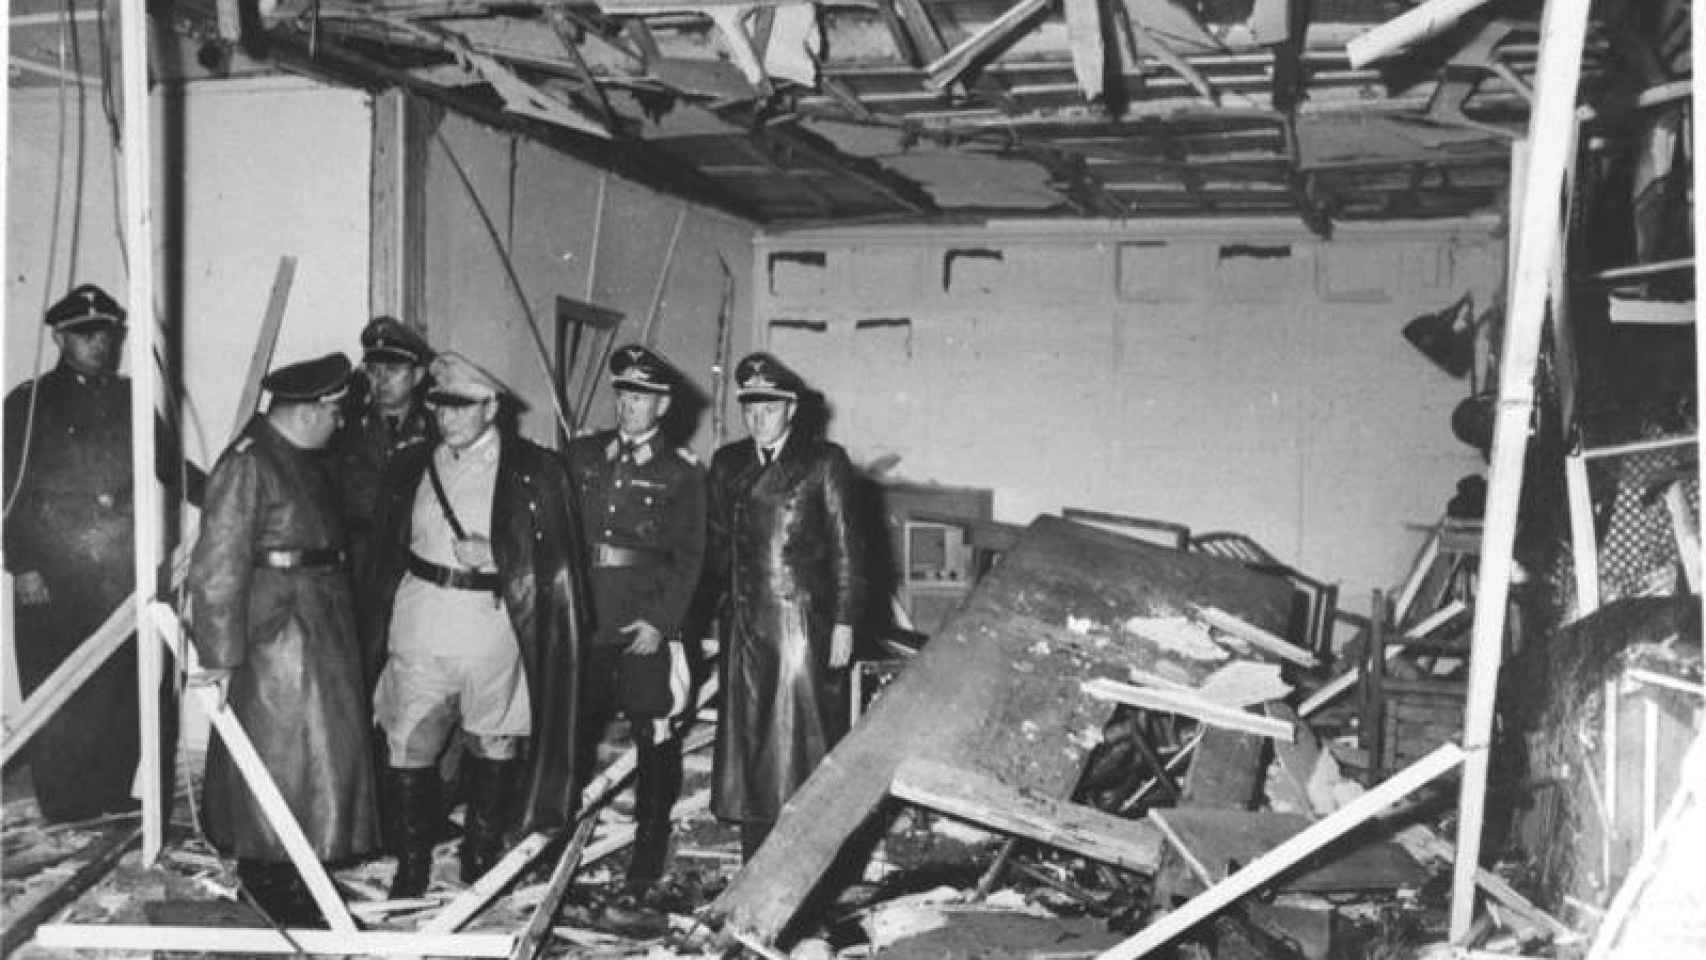 La sala donde se atentó contra Hitler, tras la explosión.